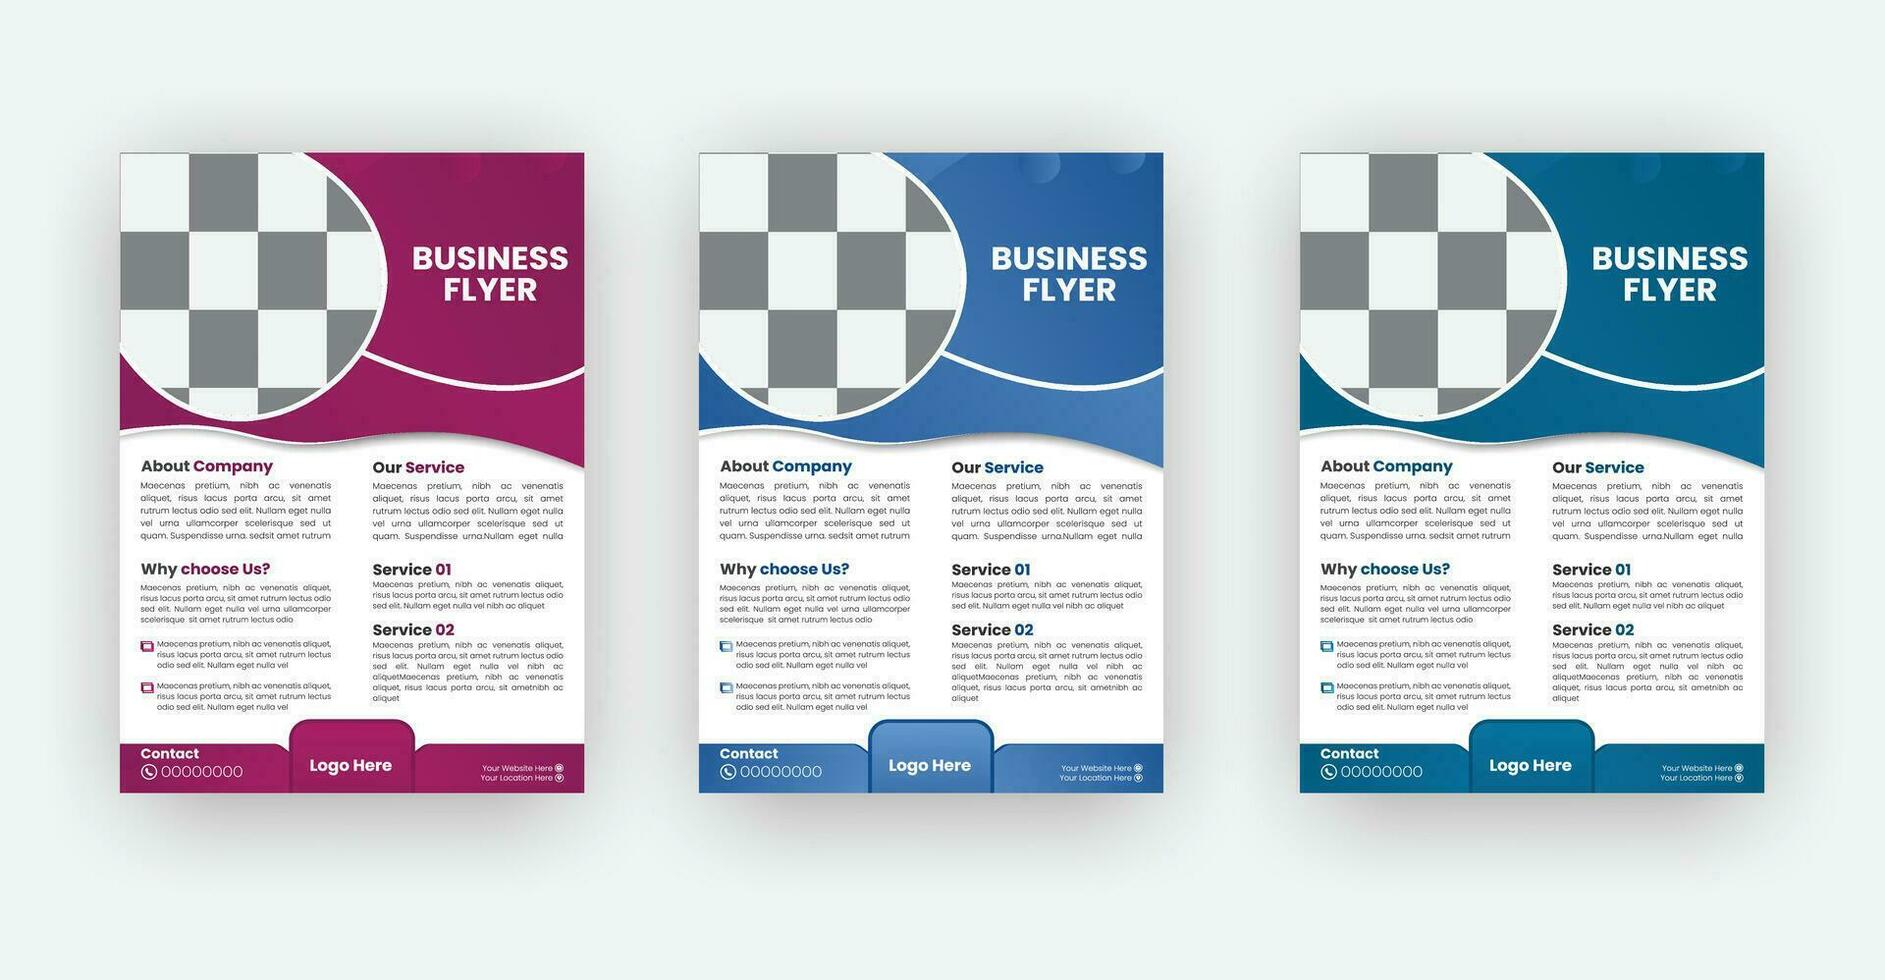 modelo de design de folheto de brochura de negócios a4. vetor